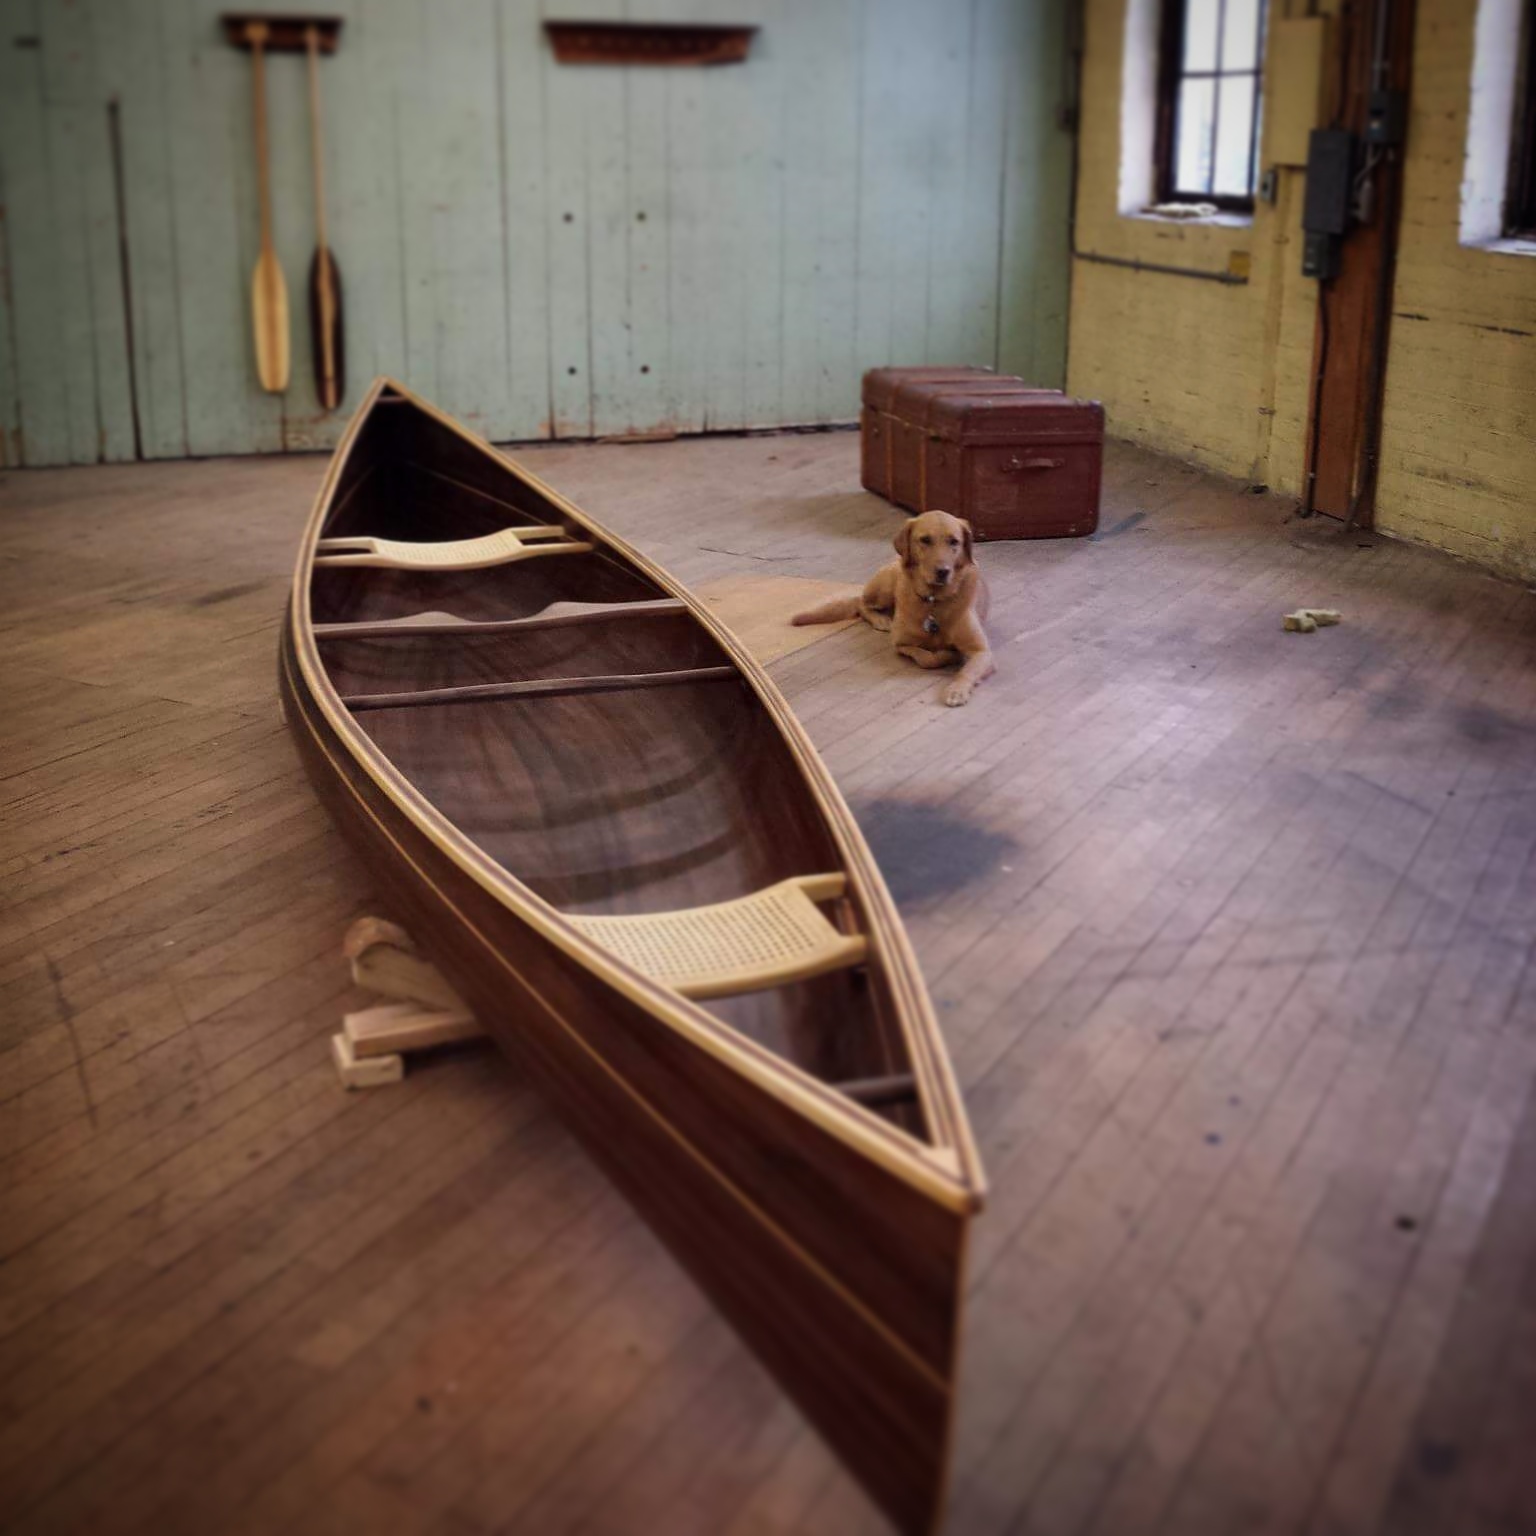 The Tandem Ashes Day | Canoe Plans for a Cedar Strip Tandem Canoe